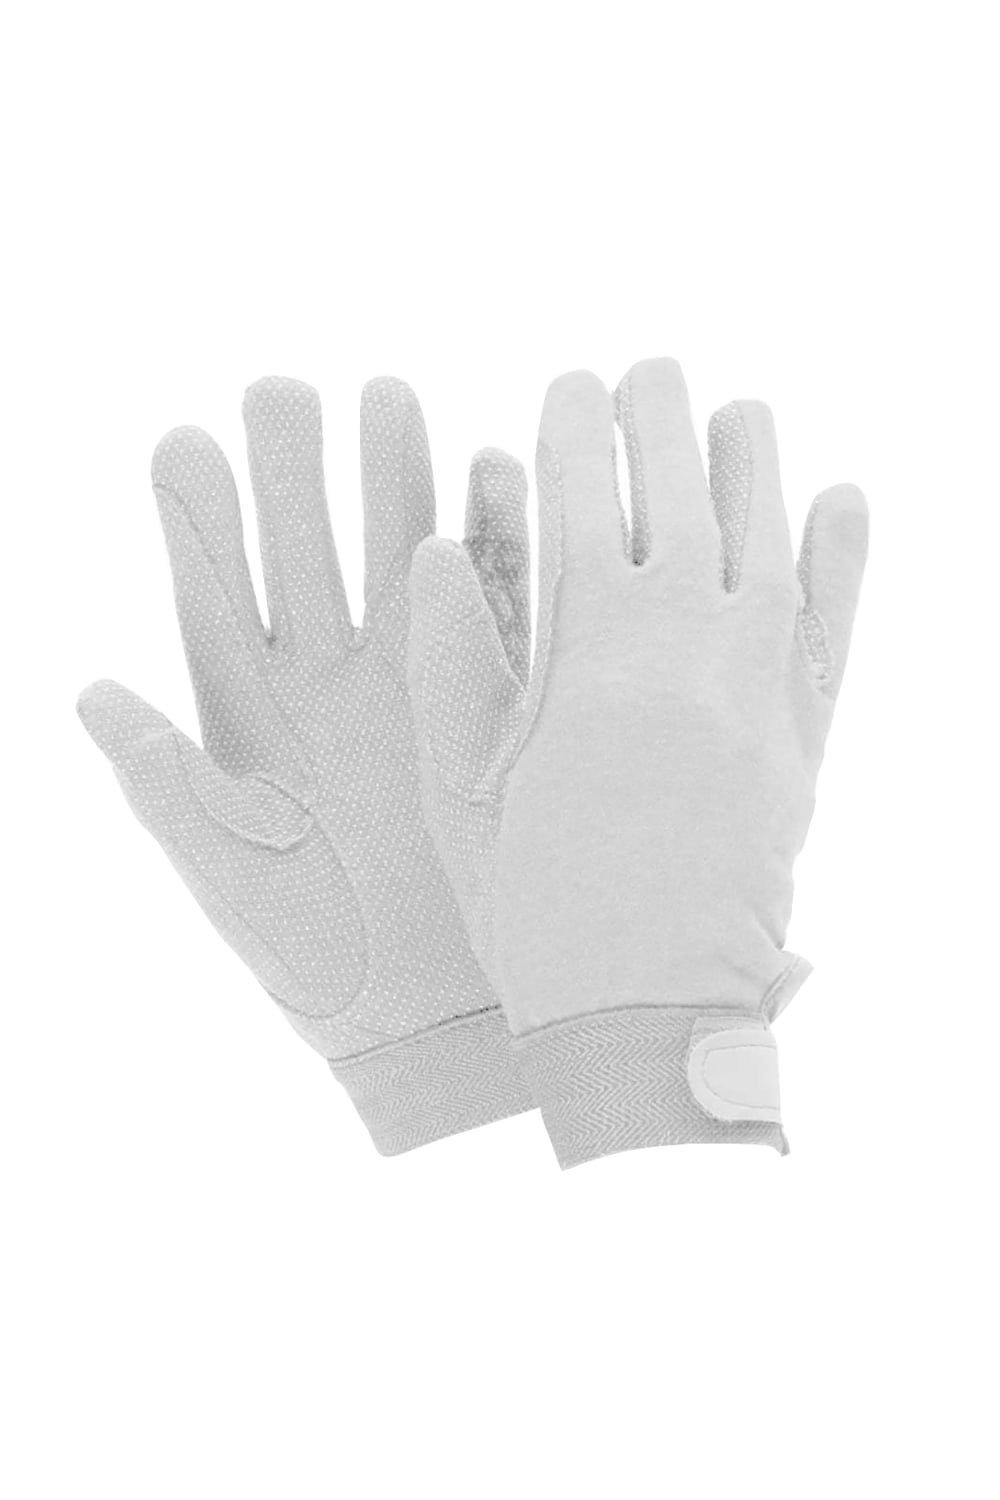 Перчатки для трековой езды Dublin, белый перчатки рабочие утепленные усиленные berta хлопковые размер xl